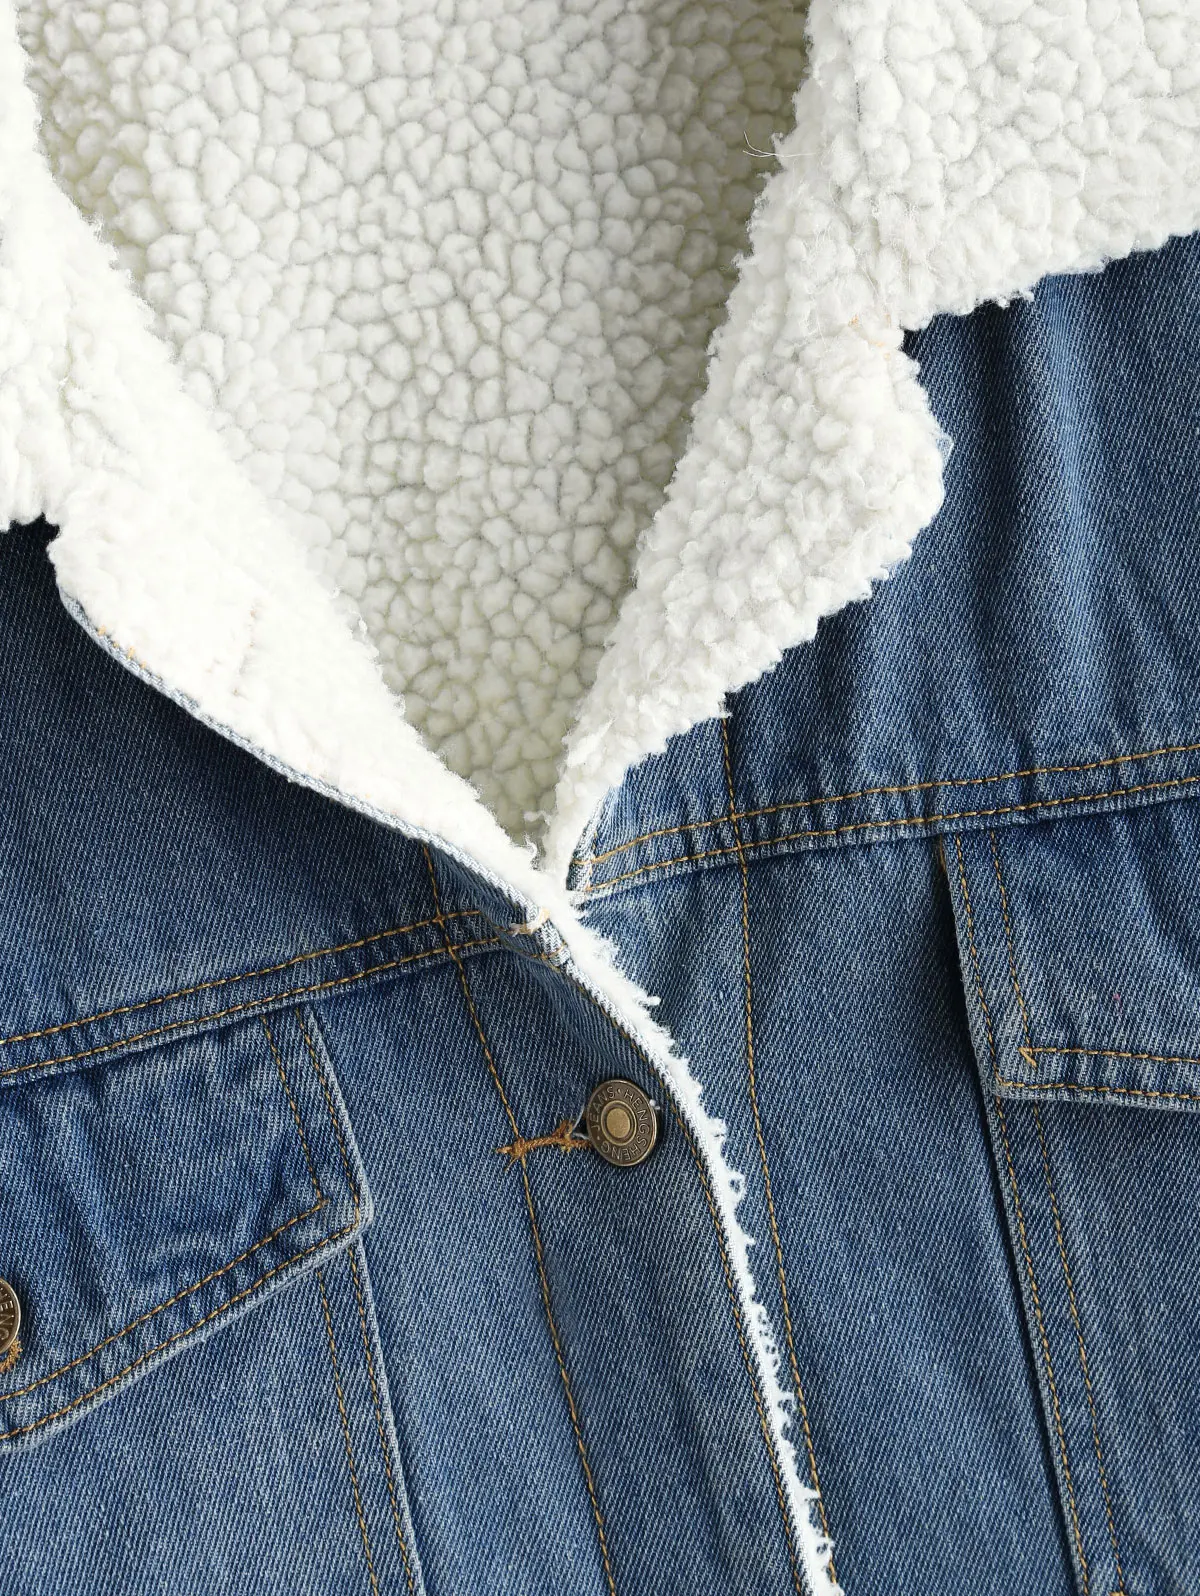 ZAFUL джинсовая куртка из флиса с заниженным плечом и карманами, джинсы с подкладкой, Женская однобортная куртка в винтажном стиле, осенне-зимнее пальто